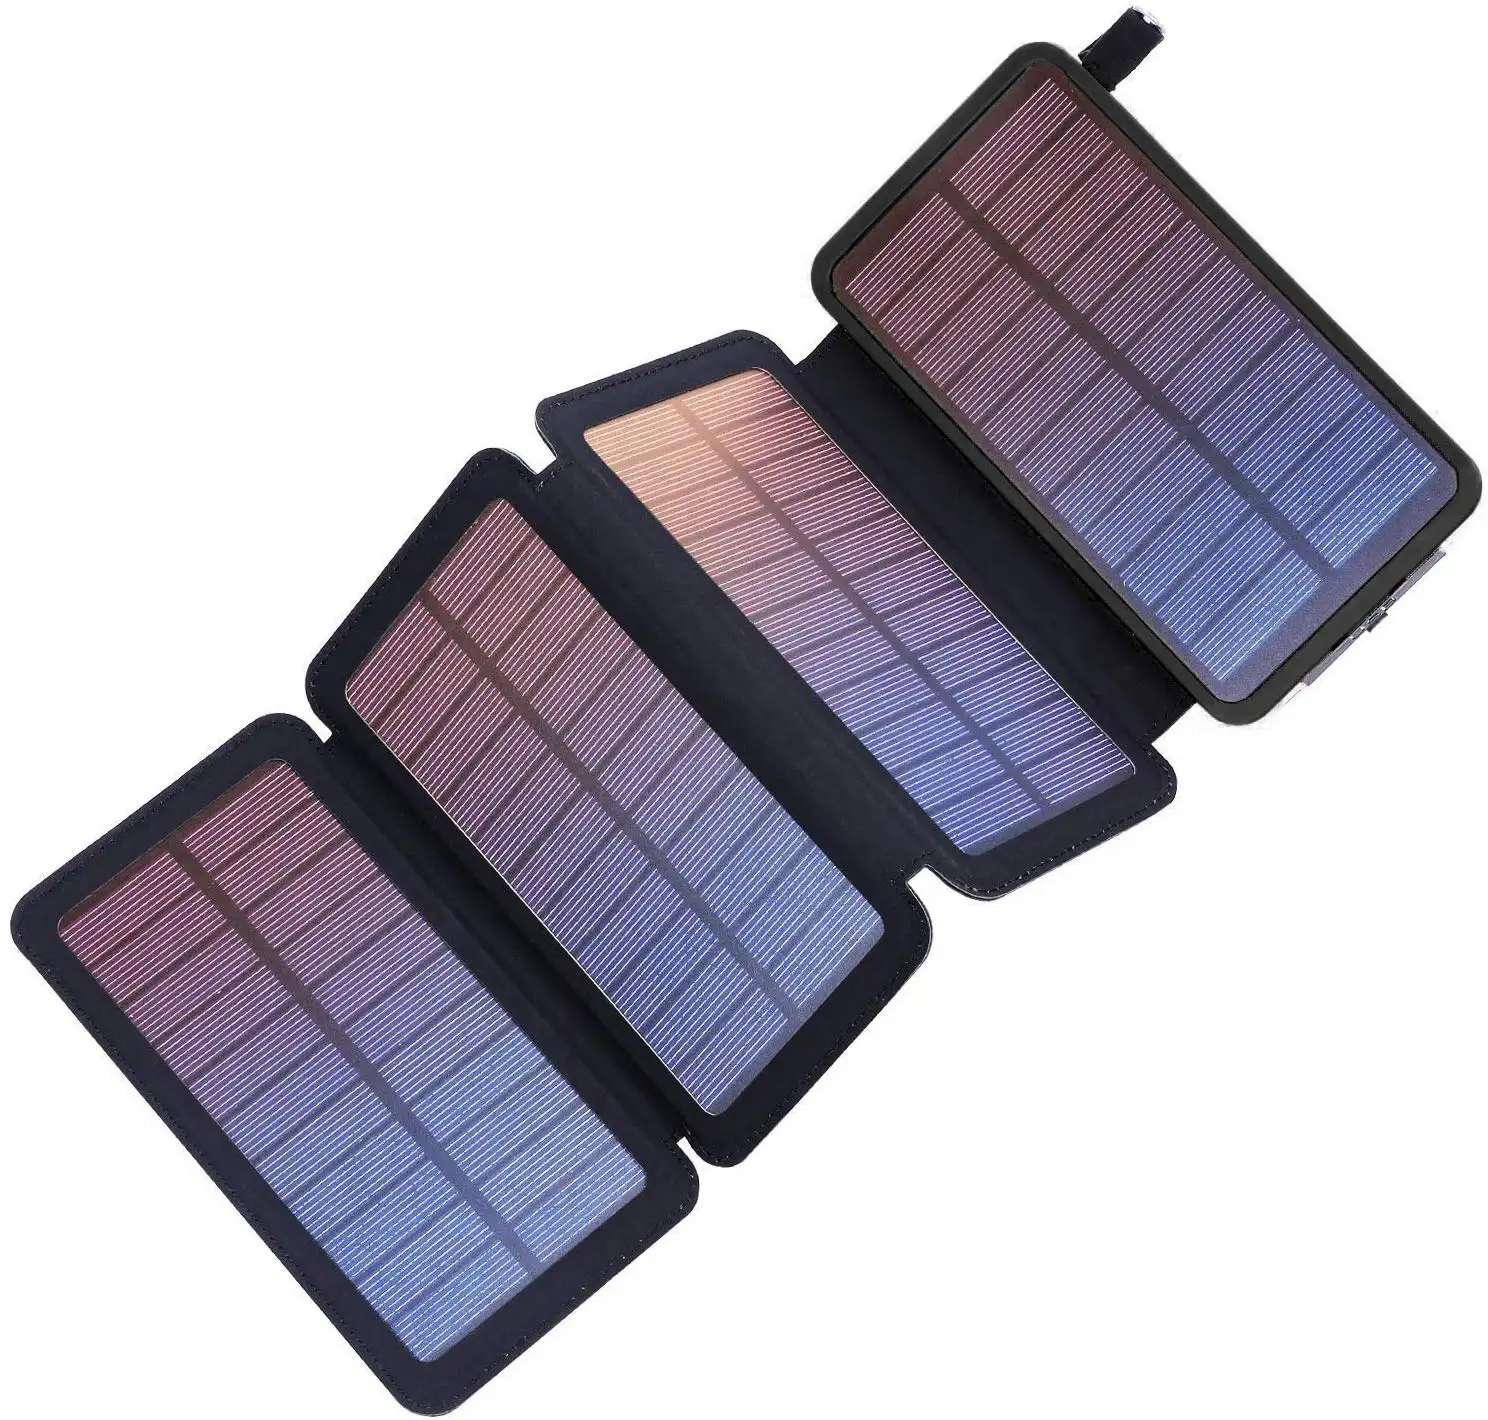 Güneş enerjisi bankası katlanabilir cep telefonu şarj katlanabilir güneş enerjisi bankası çift USB su geçirmez katlanır güneş cep telefonu Powerbank